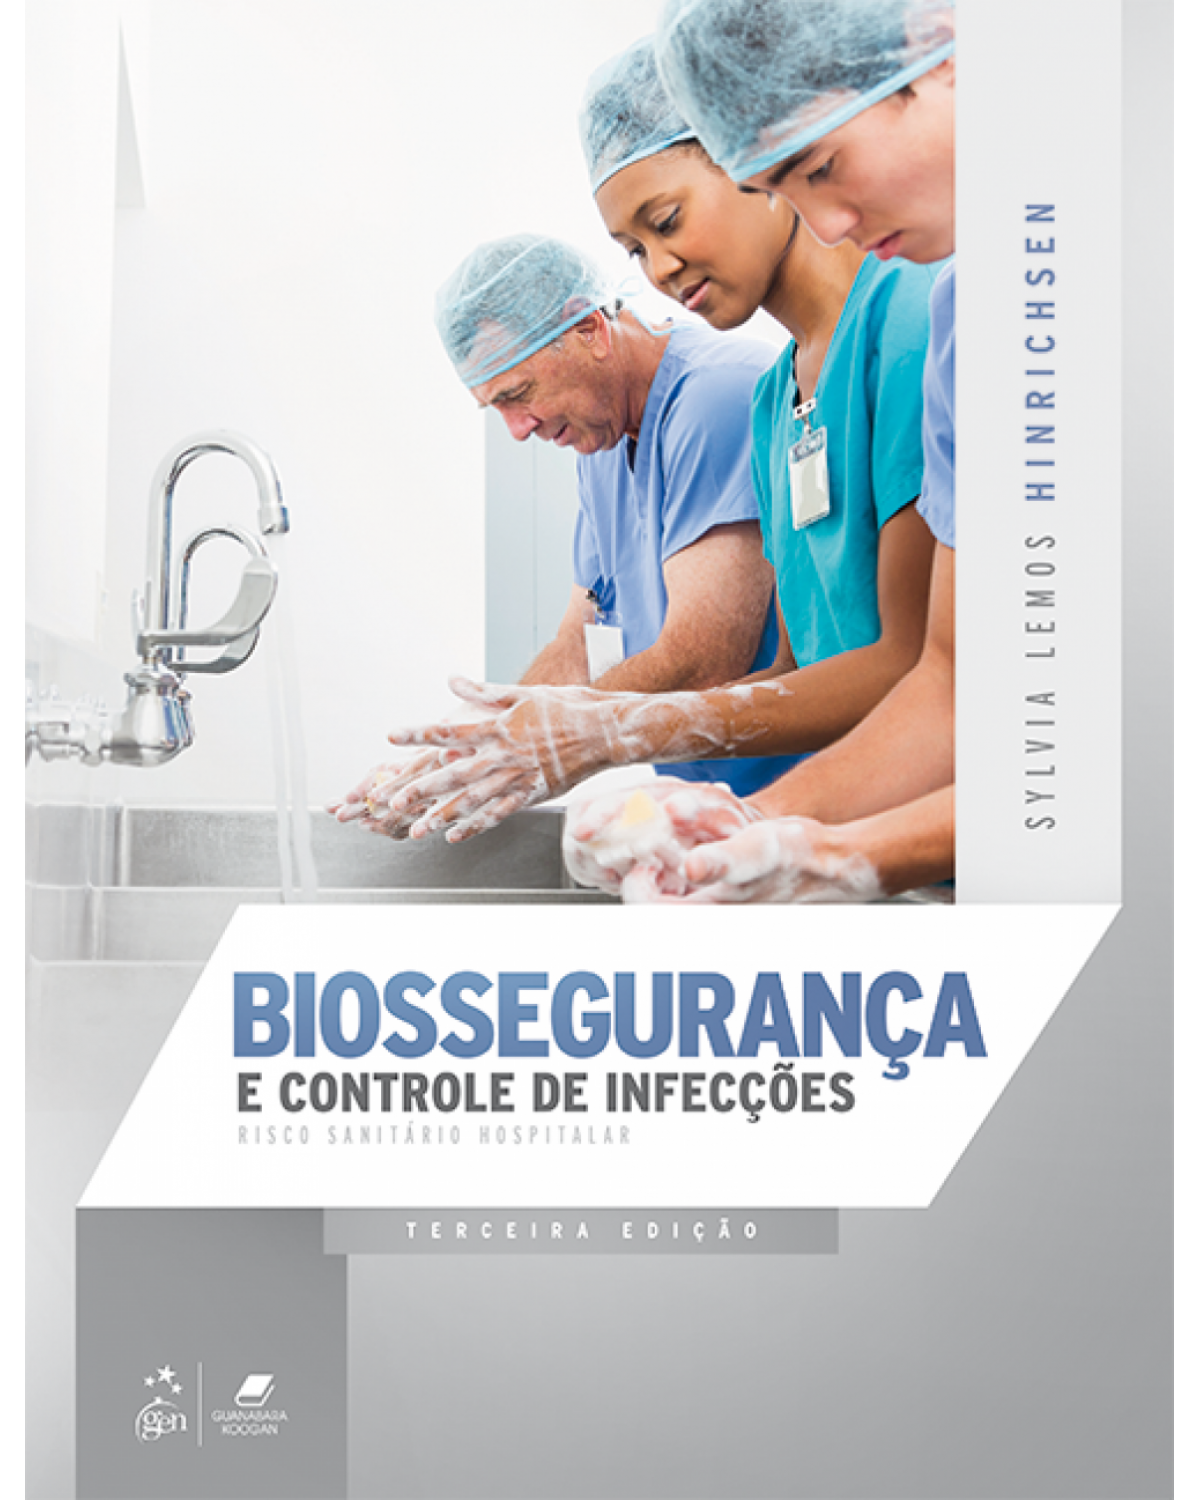 Biossegurança e controle de infecções - risco sanitário hospitalar - 3ª Edição | 2018